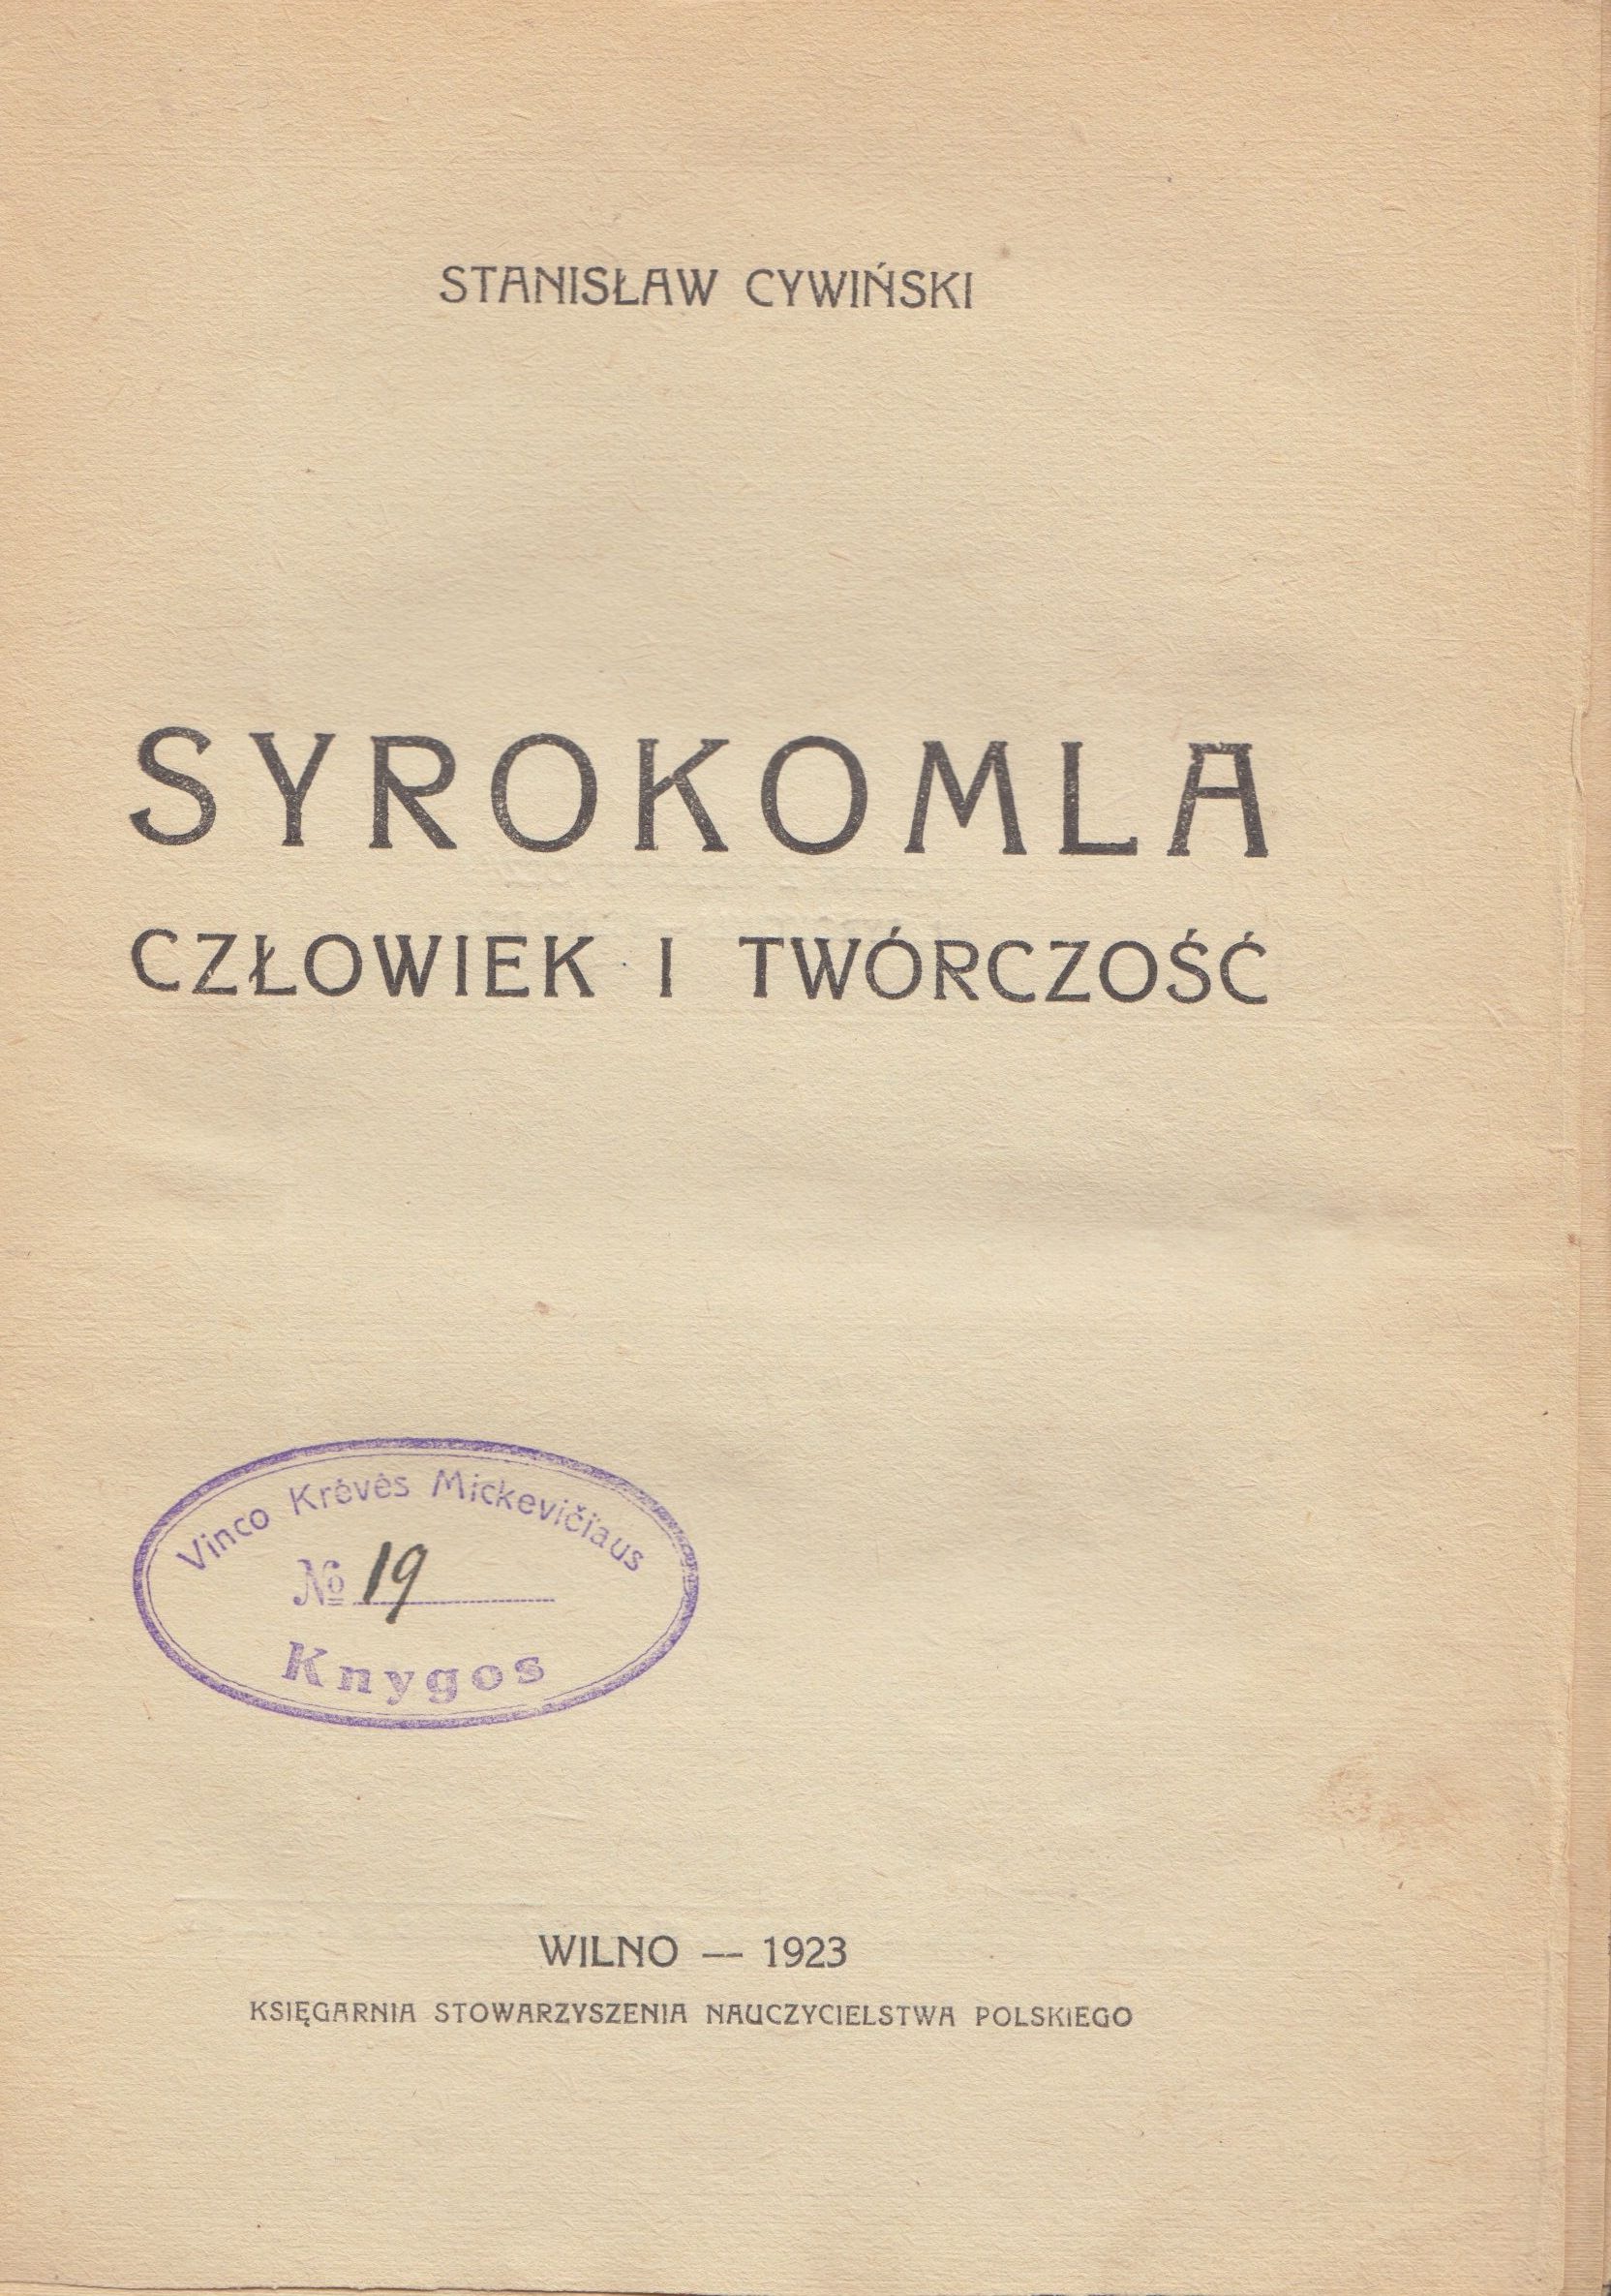 Stanislaw Cywinski. Sirokomlė: žmogus ir kūryba. Vilnius, 1923 m. Knyga lenkų k. Antyraštinis puslapis. MLLM 2161